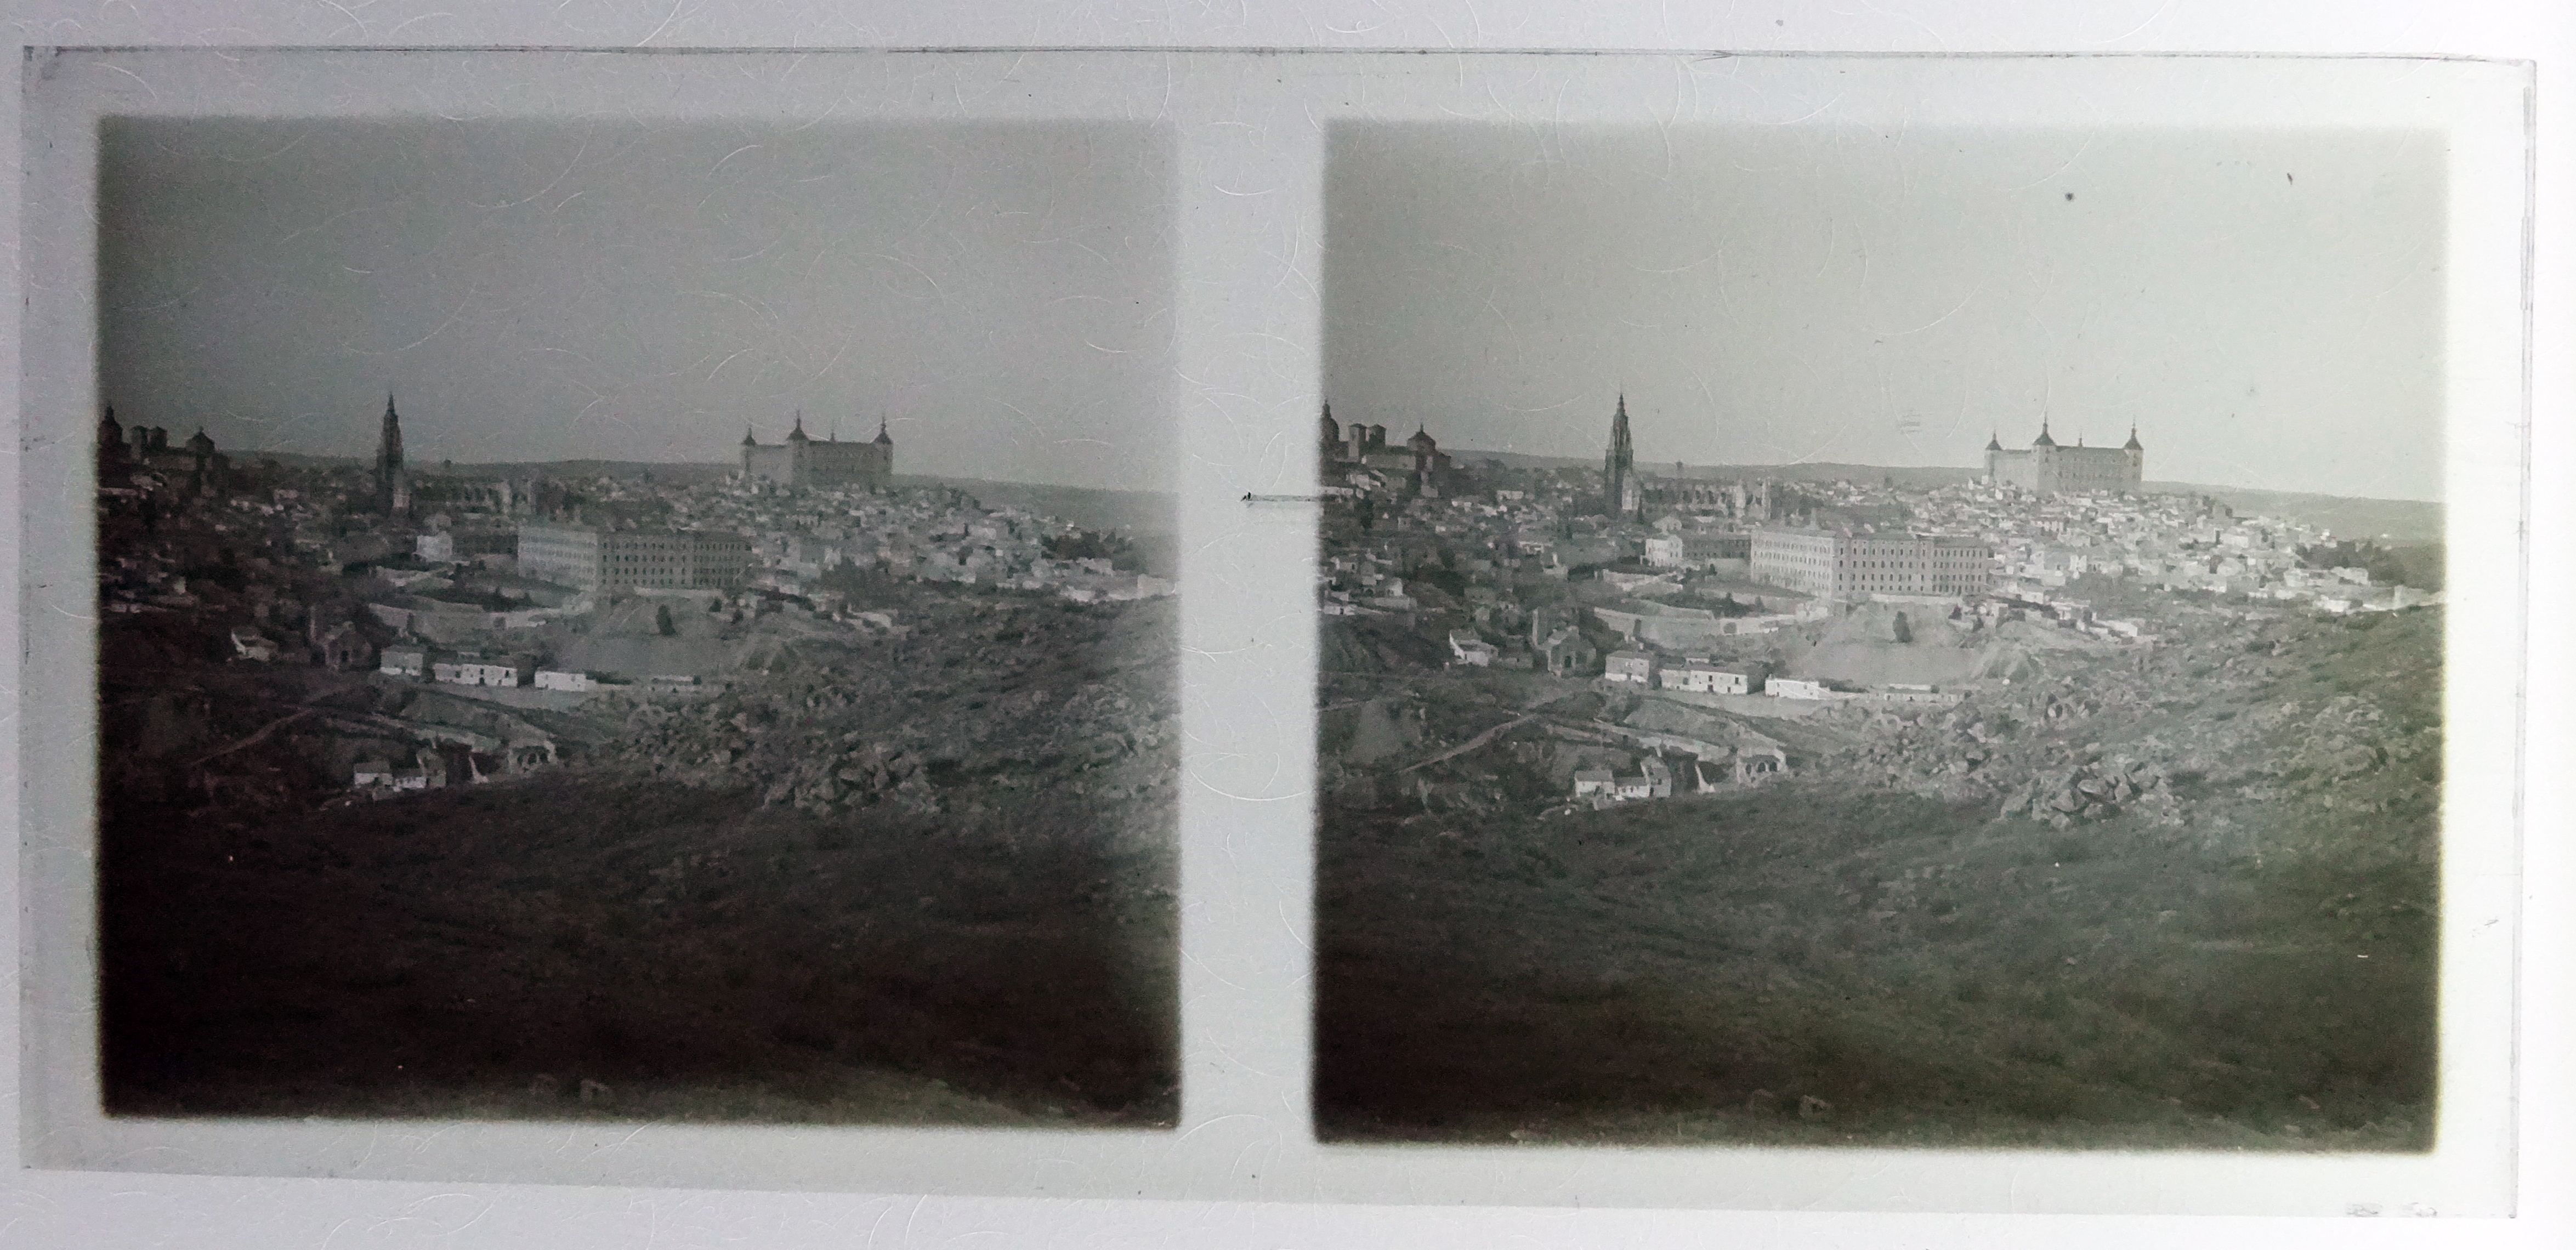 Vista general de Toledo desde los cigarrales. Fotografía de Francisco Rodríguez Avial hacia 1910 © Herederos de Francisco Rodríguez Avial